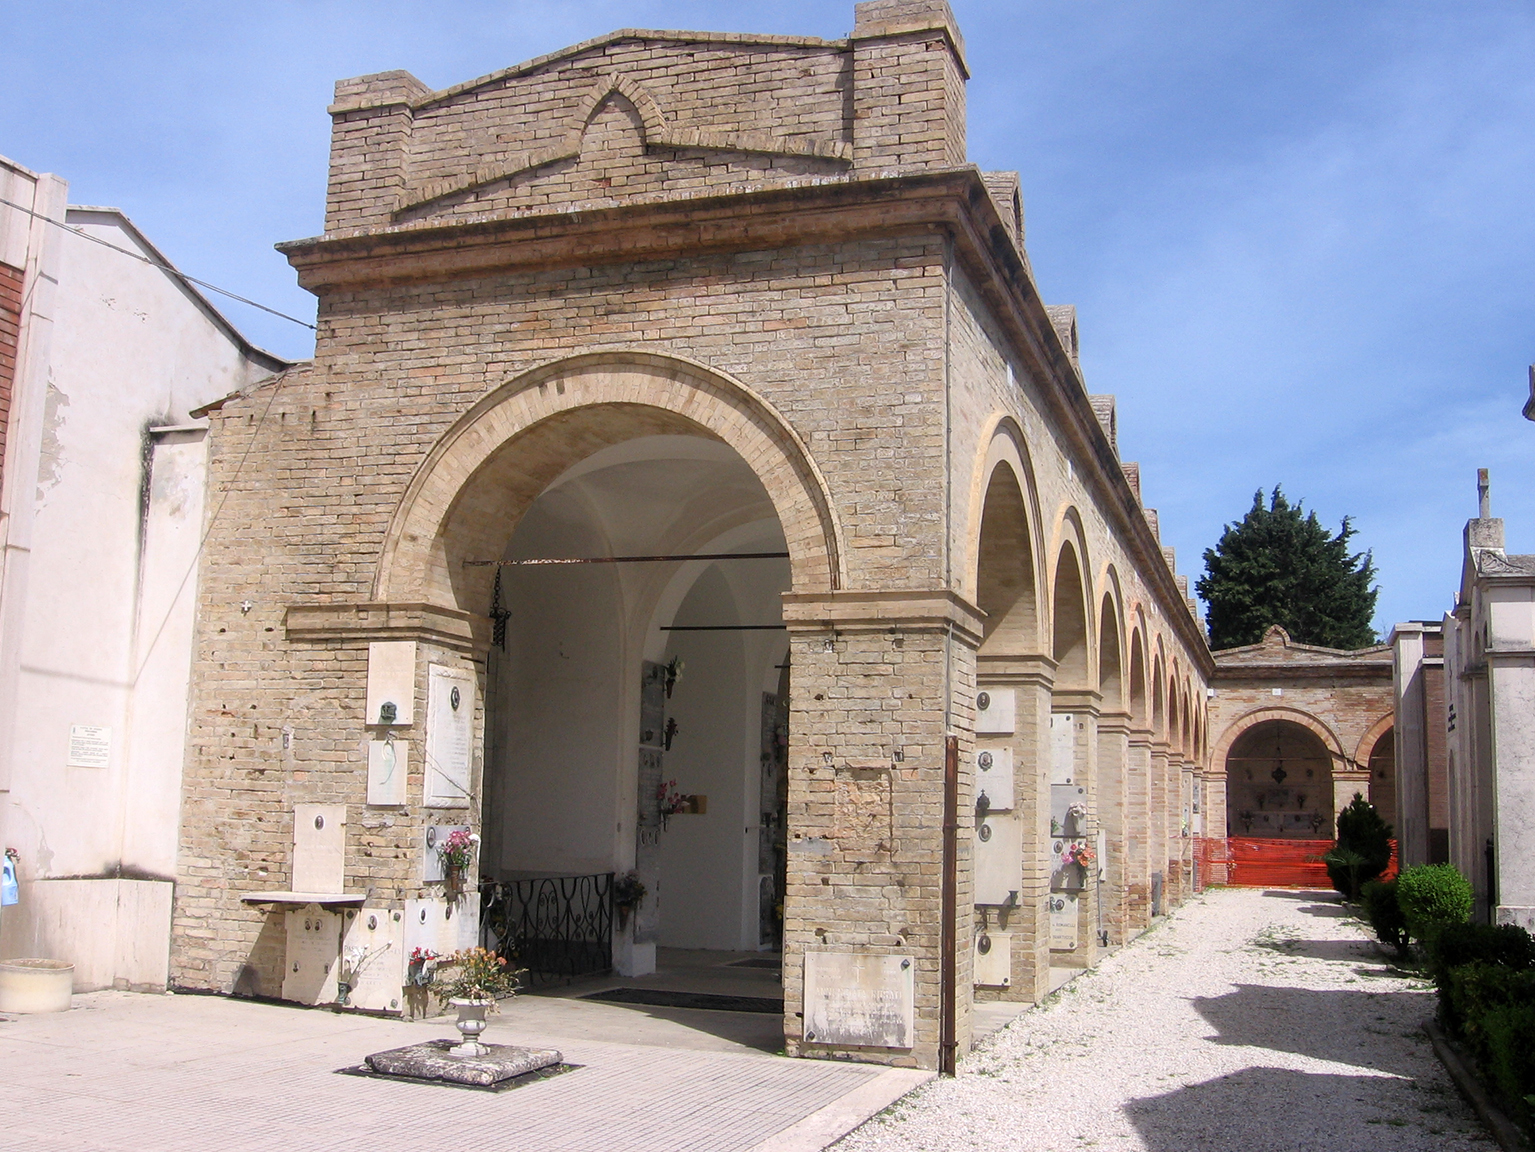 Cimitero civico di Fermo (cimitero, monumentale) - Fermo (FM) 